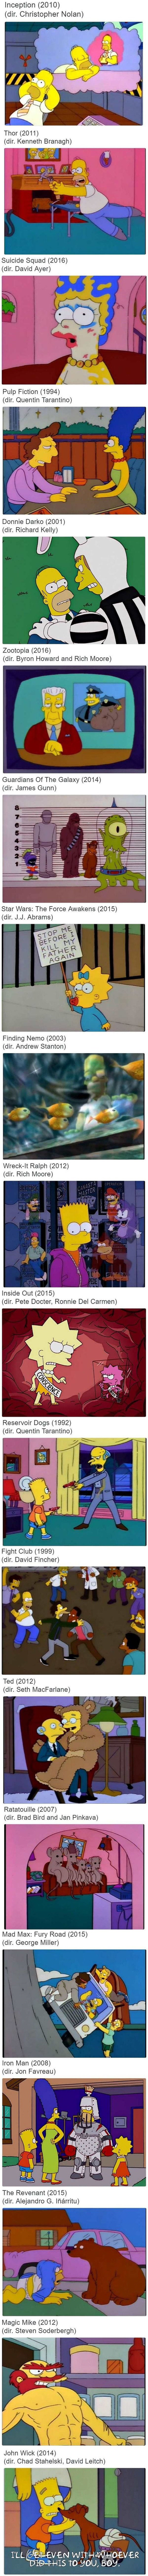 Meme_otros - 20 escenas de Los Simpson que nos recuerdan a alguna película